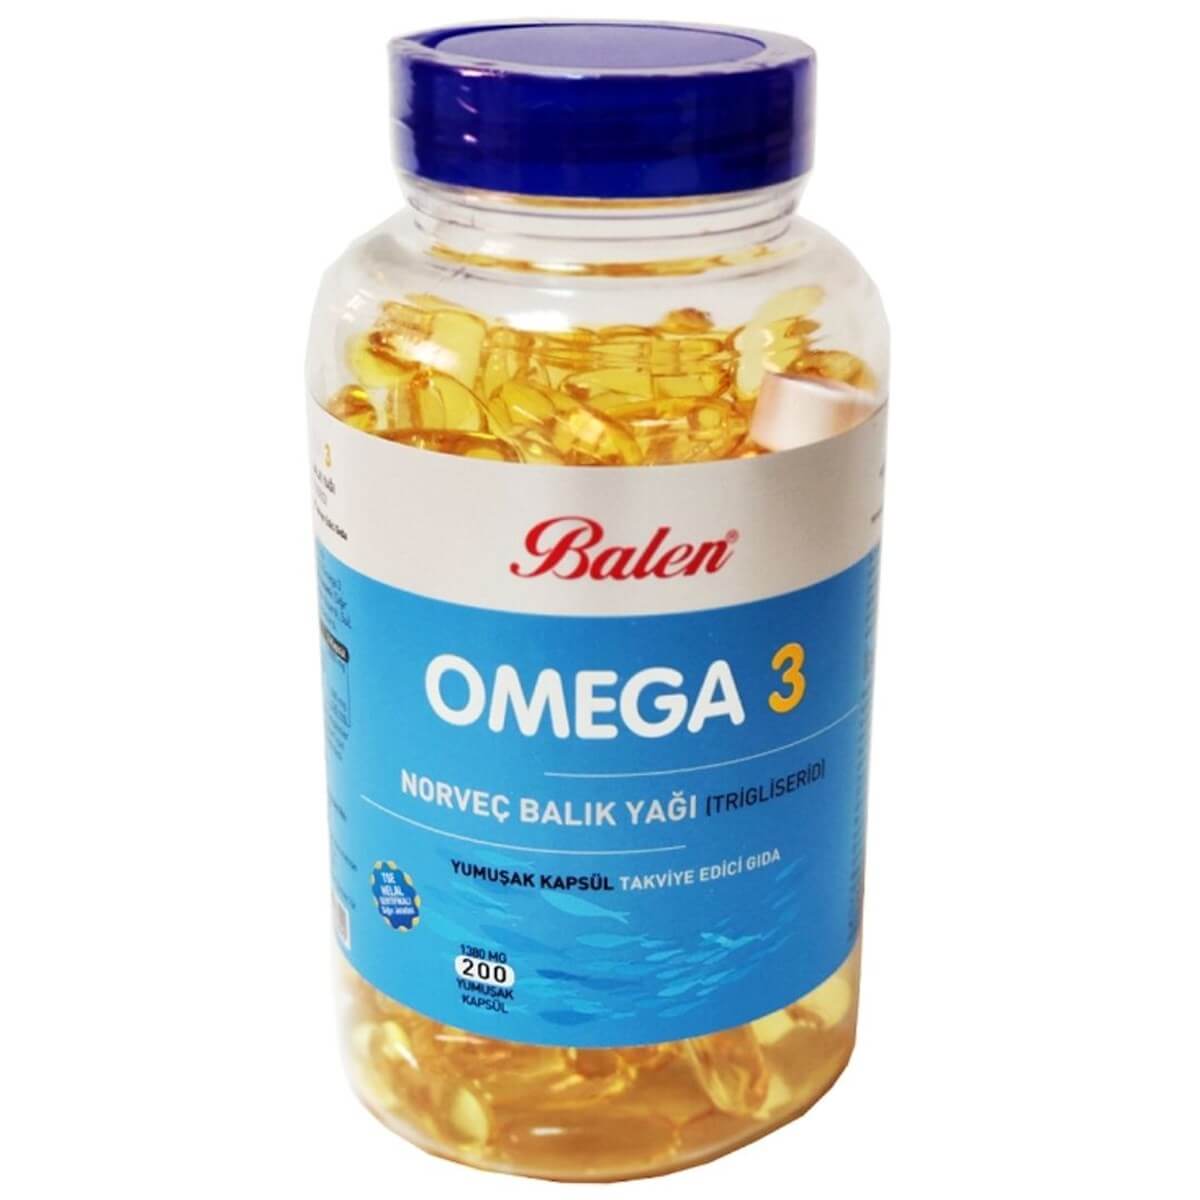 Balen Omega 3 Norveç Balık Yağı Trigliserid 200 Kapsül X 1380 mg